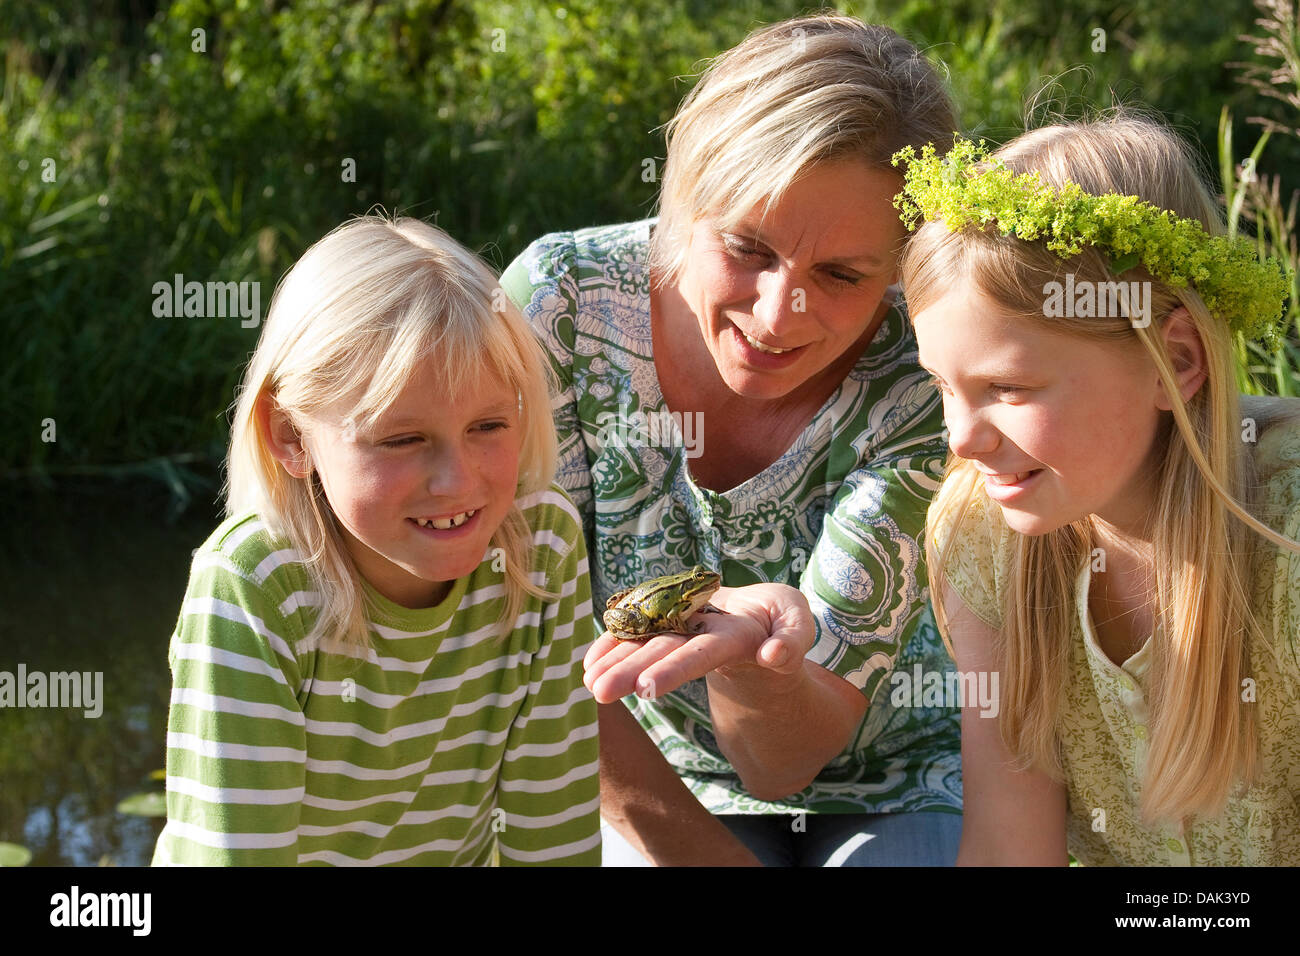 Unione rana verde, comune rana verde (Rana kl. esculenta, Rana esculenta, Pelophylax esculentus), madre mostra una rana per i suoi figli, Germania Foto Stock